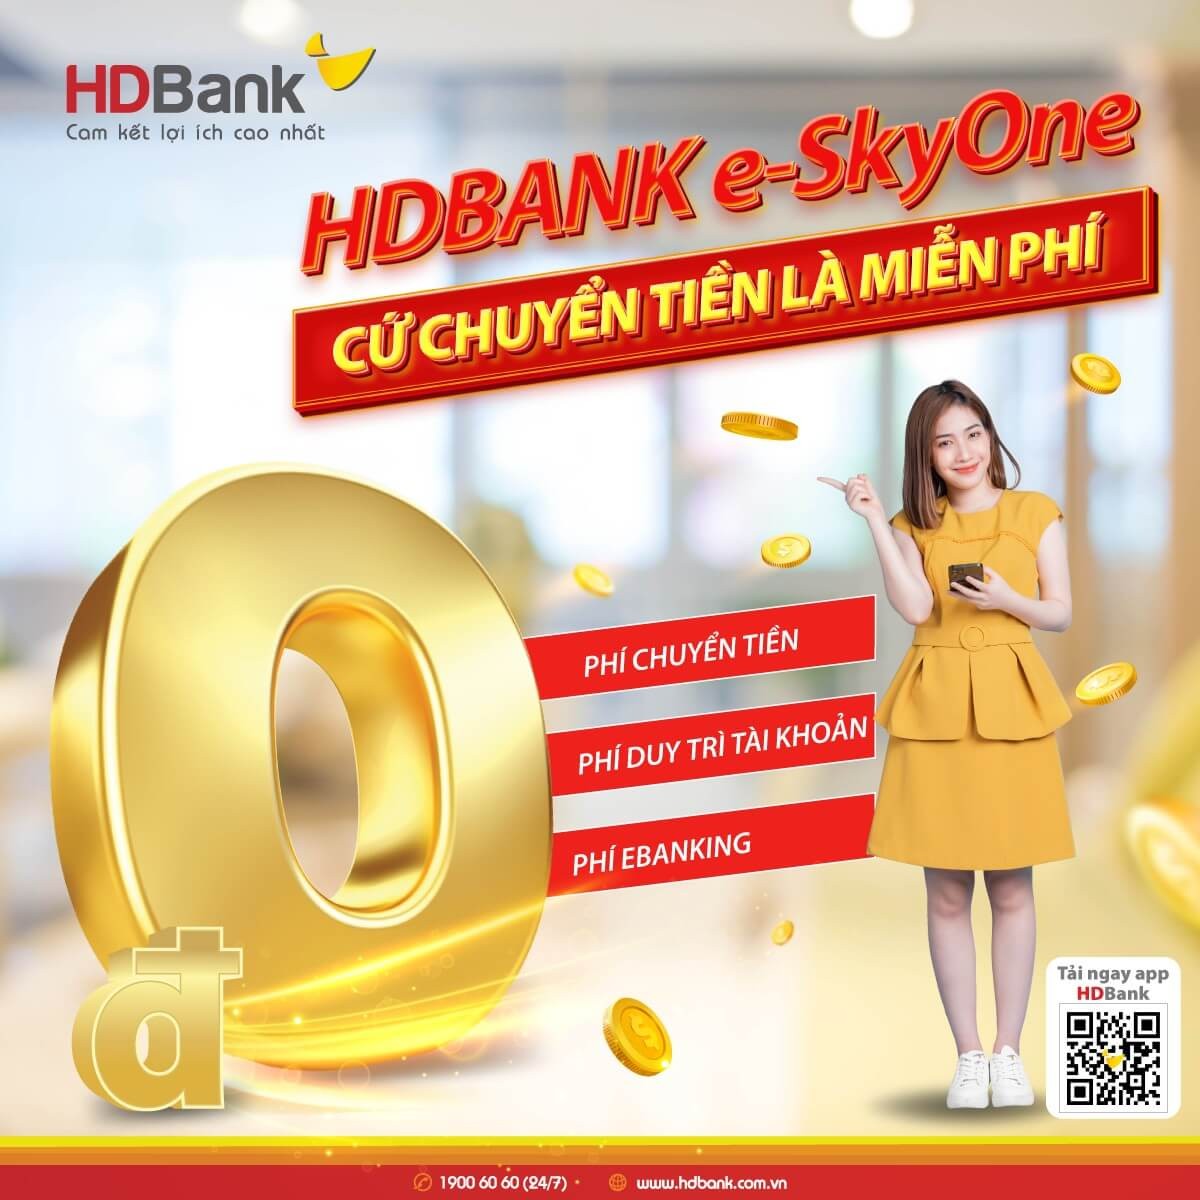 HDB có liên quan đến ngân hàng HD Bank hay không?
